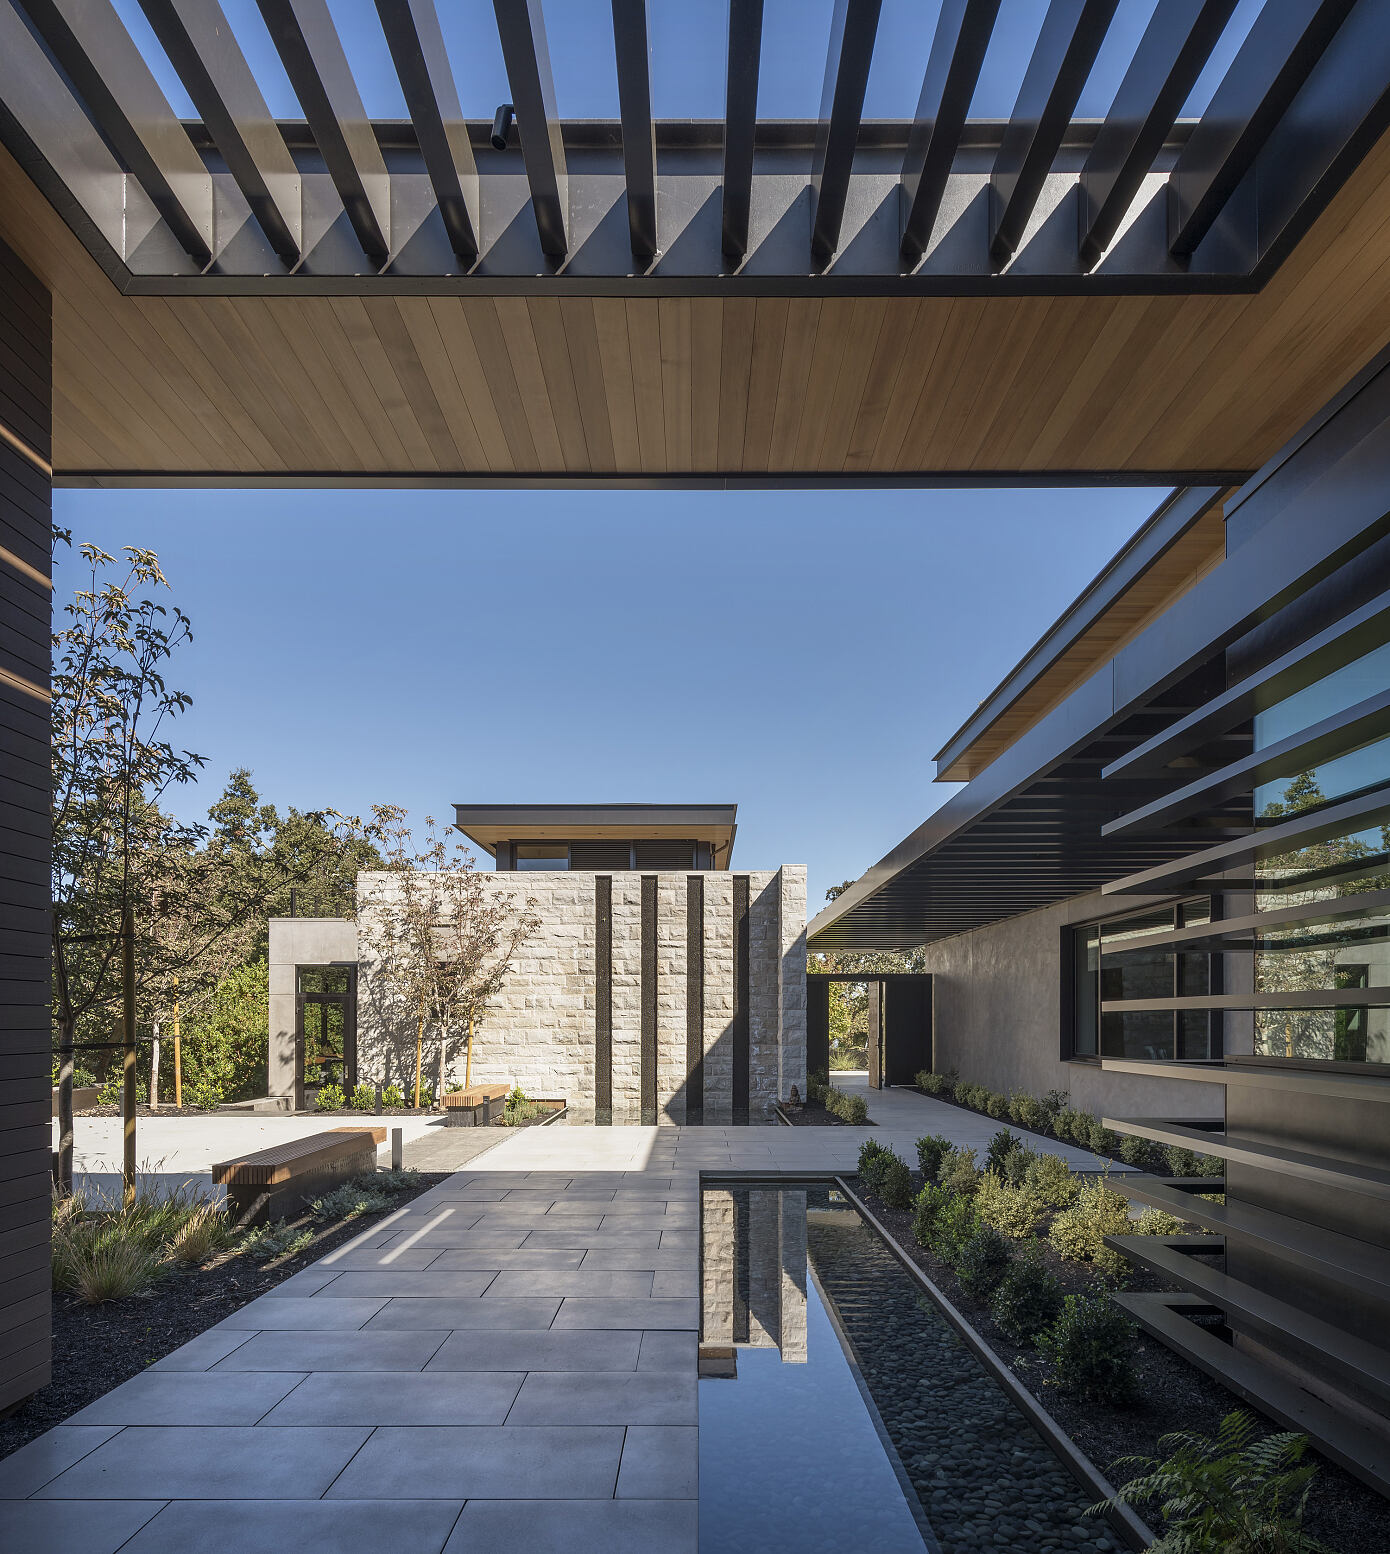 Portola Valley Residence by SB Architects